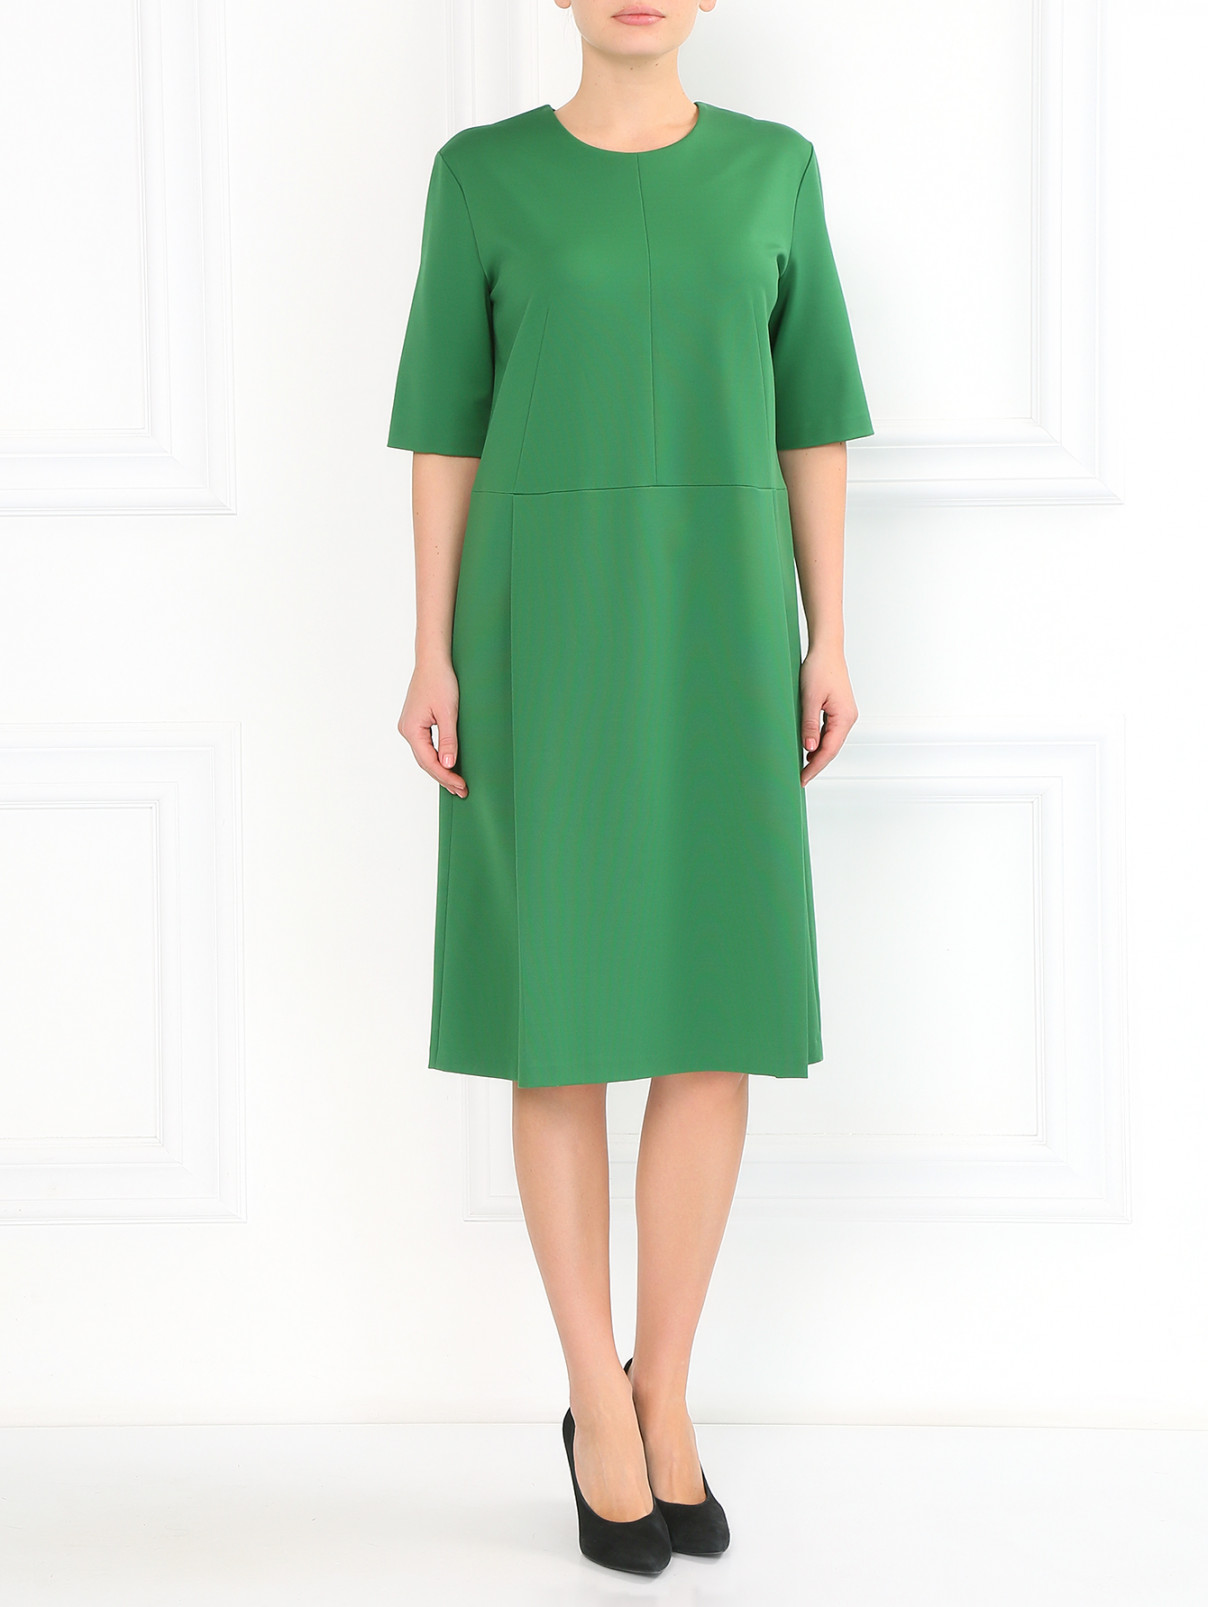 Платье свободного кроя с защипами Jil Sander  –  Модель Общий вид  – Цвет:  Зеленый